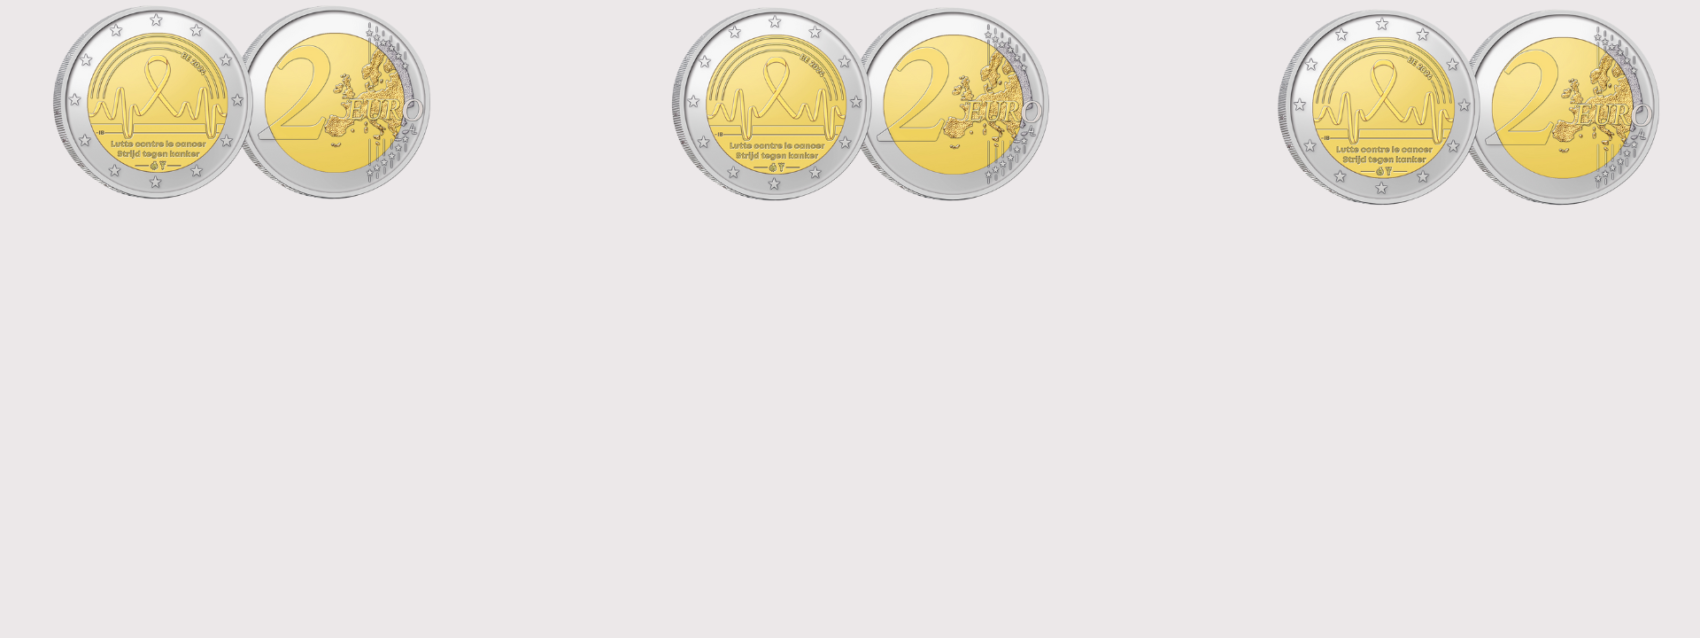 Bijzondere munt van 2 Euro